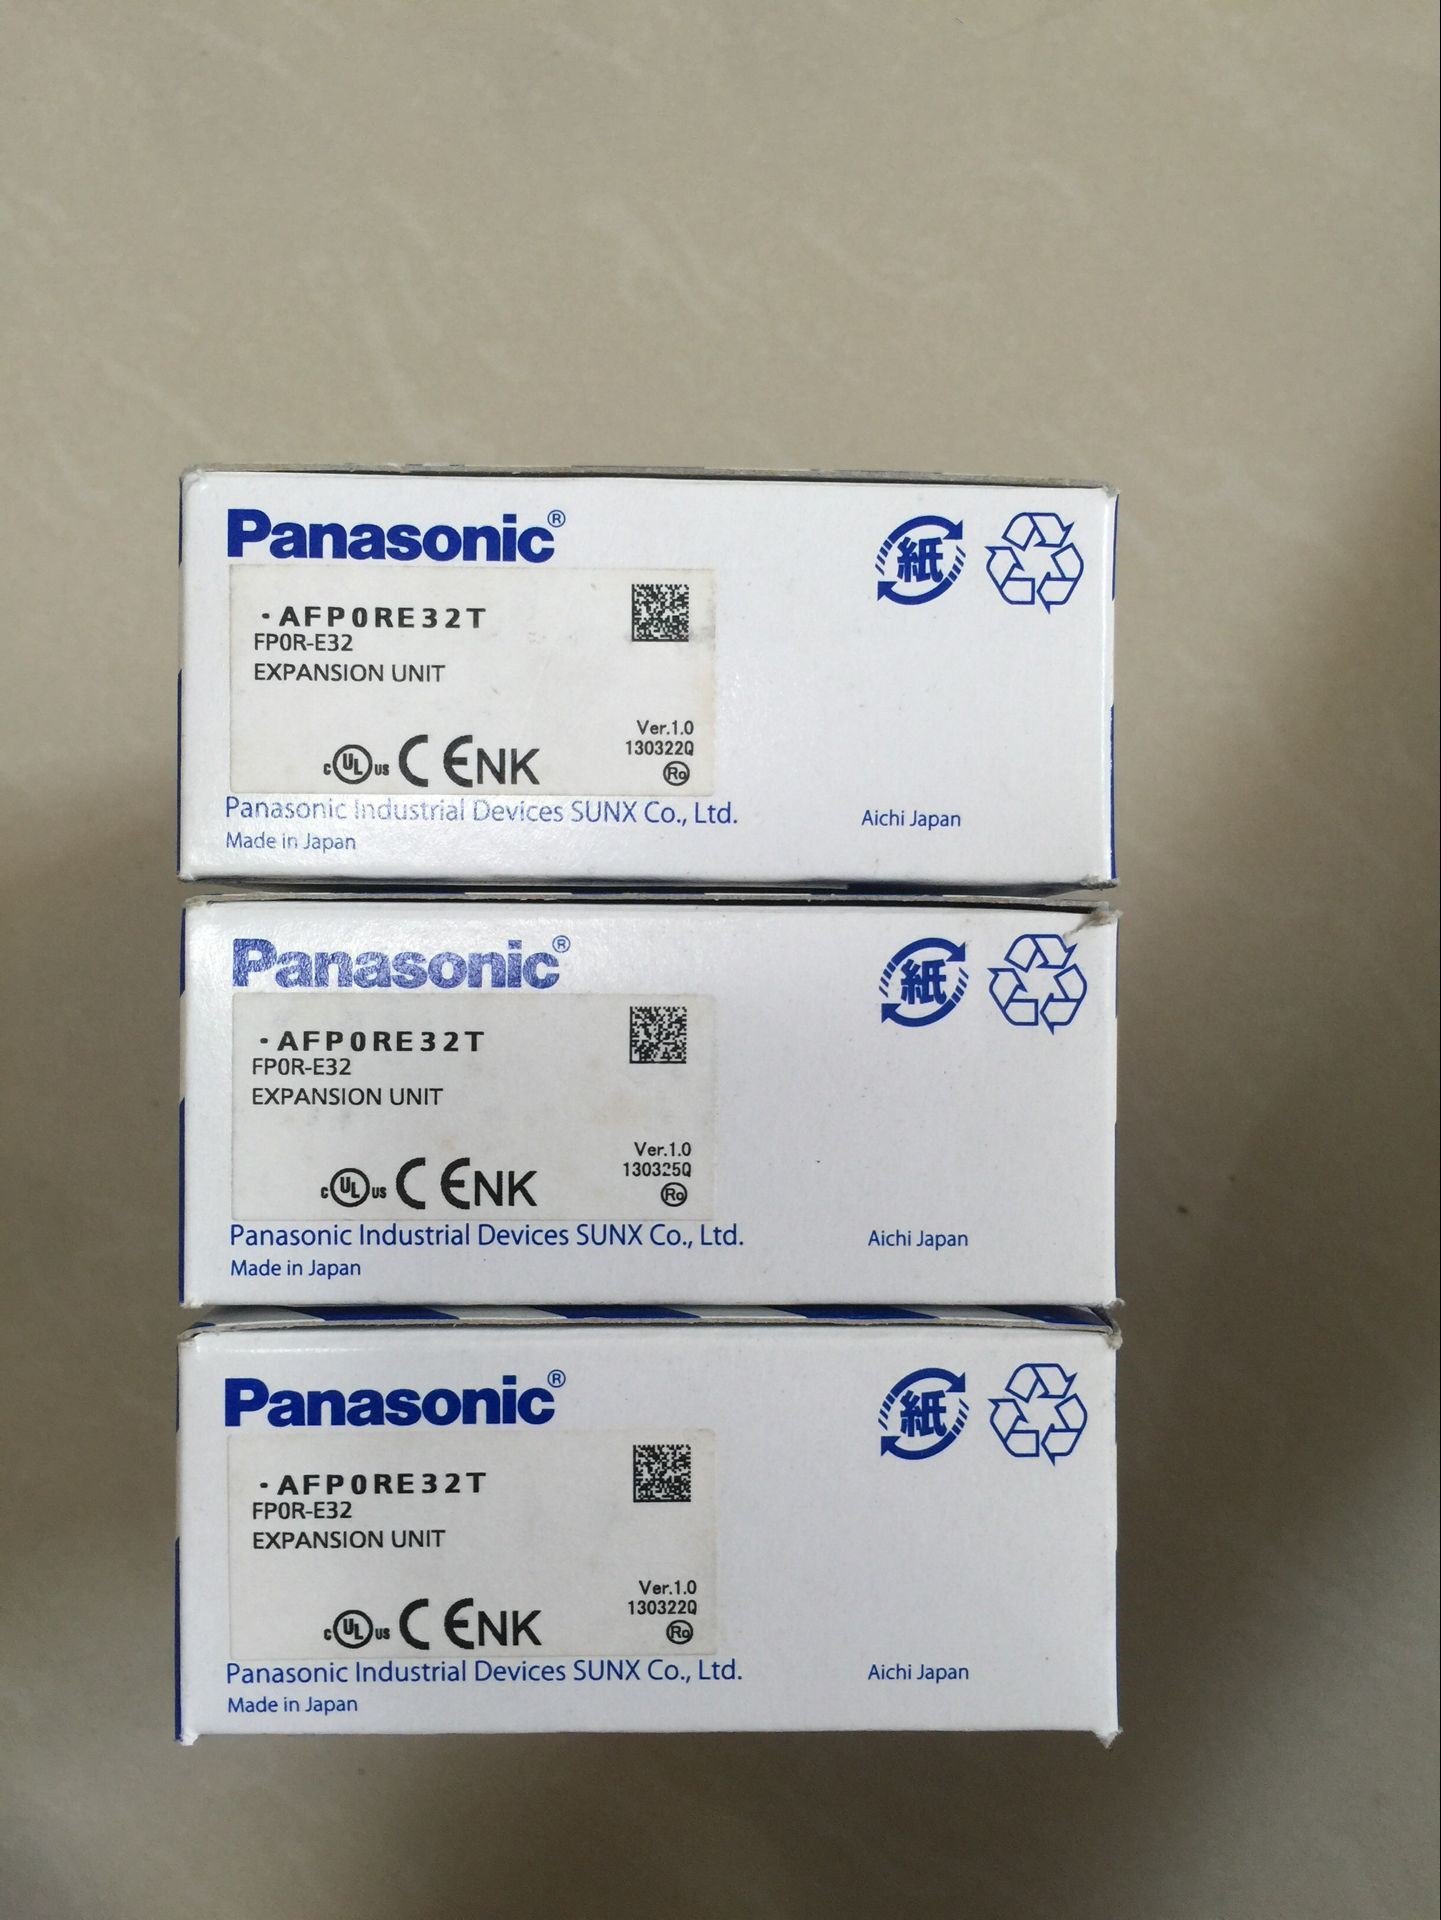 Panasonic松下PLC模块FP0R-E32 扩展单元AFP0RE32T全